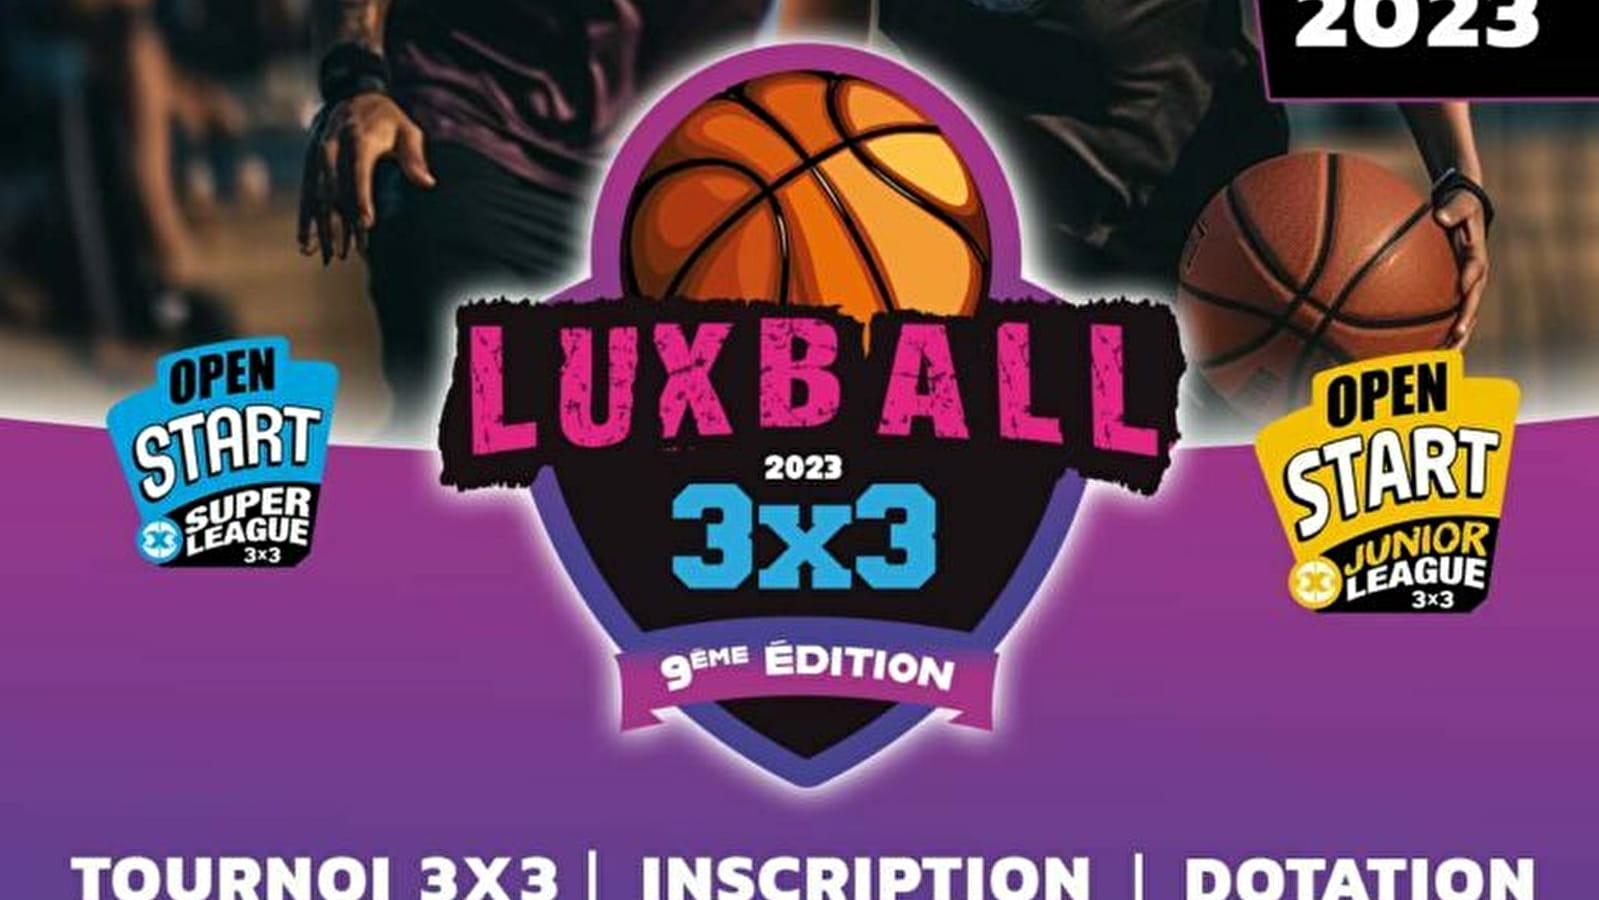 Tournoi de Basket : LuxBall 3x3